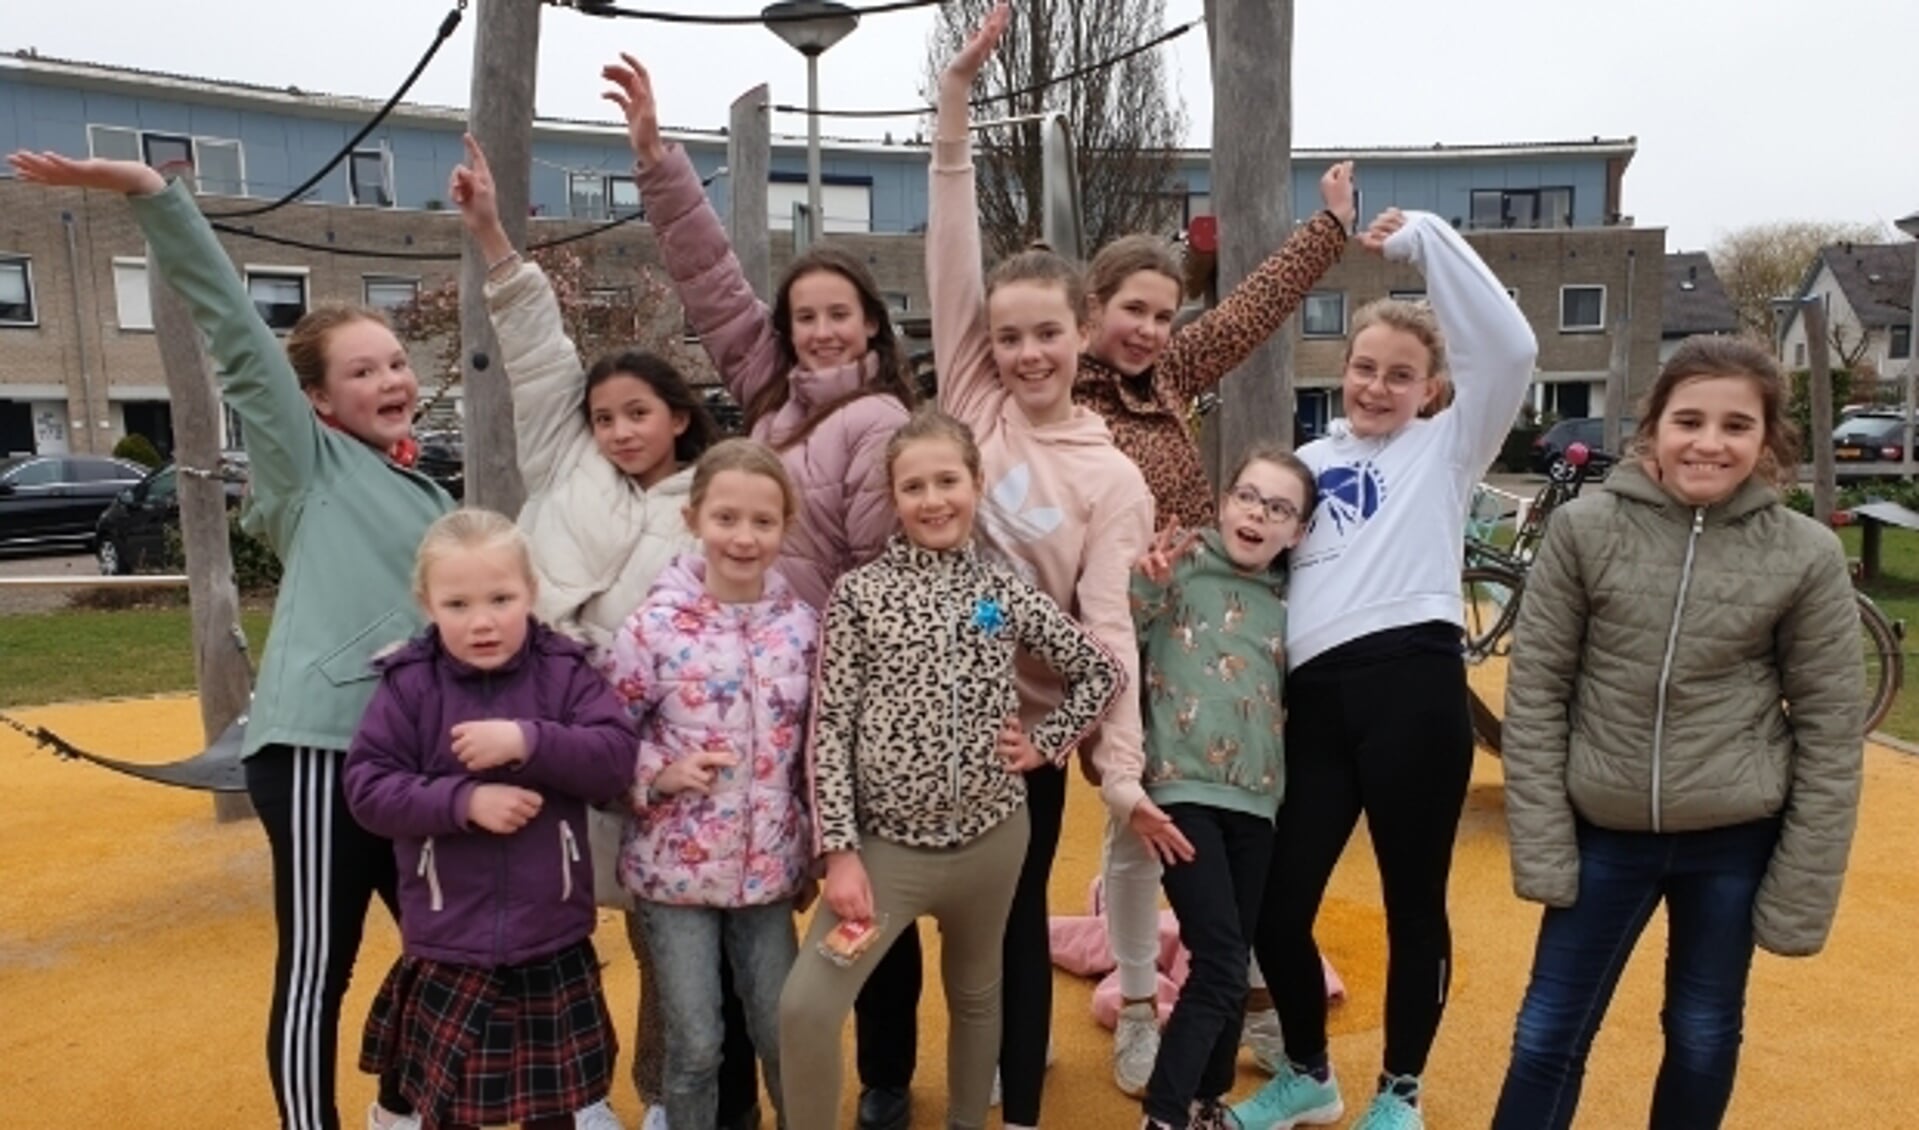 Emma Grootoonk, in het midden met de roze trui, samen met de andere 'dansjuffen' en kinderen uit de buurt.